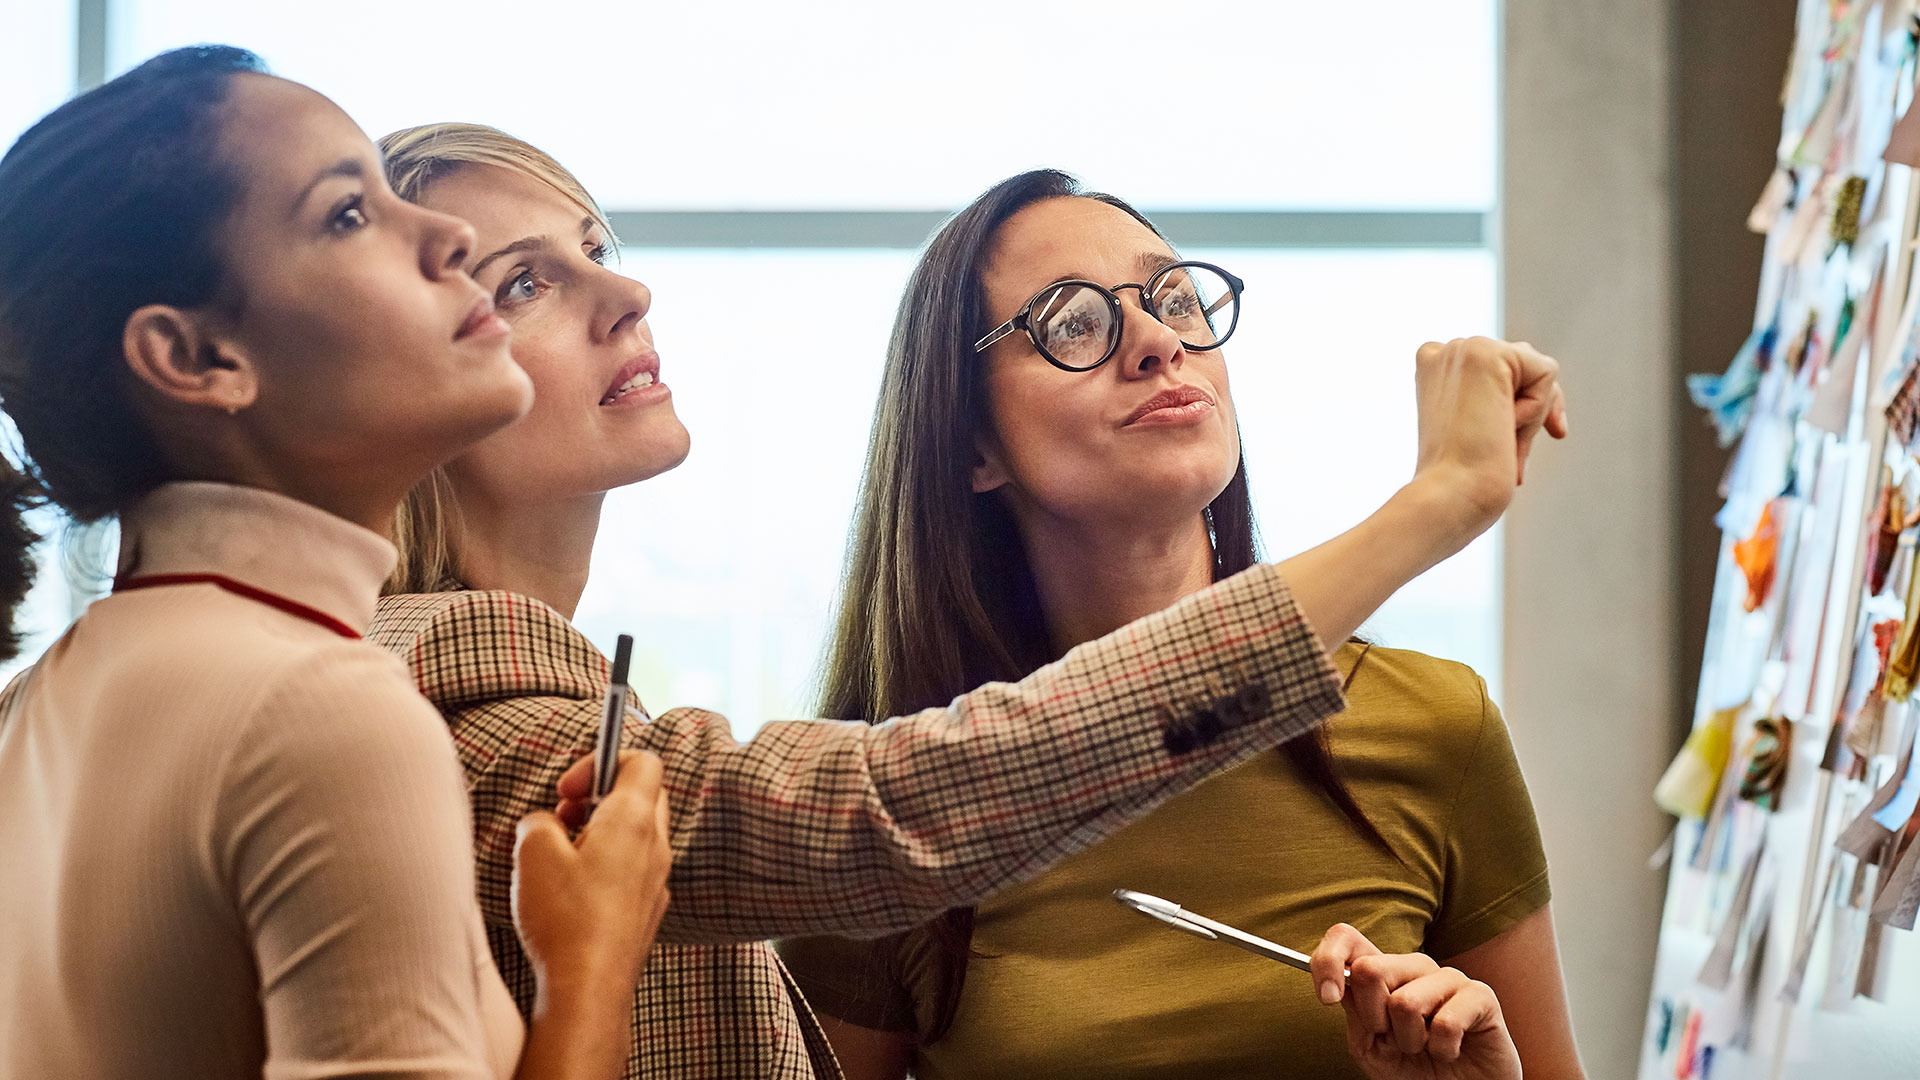 En las empresas que integran el ranking, las mujeres sienten que sus líderes son cercanos, las escuchan, las respetan, les dan autonomía, son comprensivos con los errores y fomentan la innovación y la creatividad
(Getty Images)